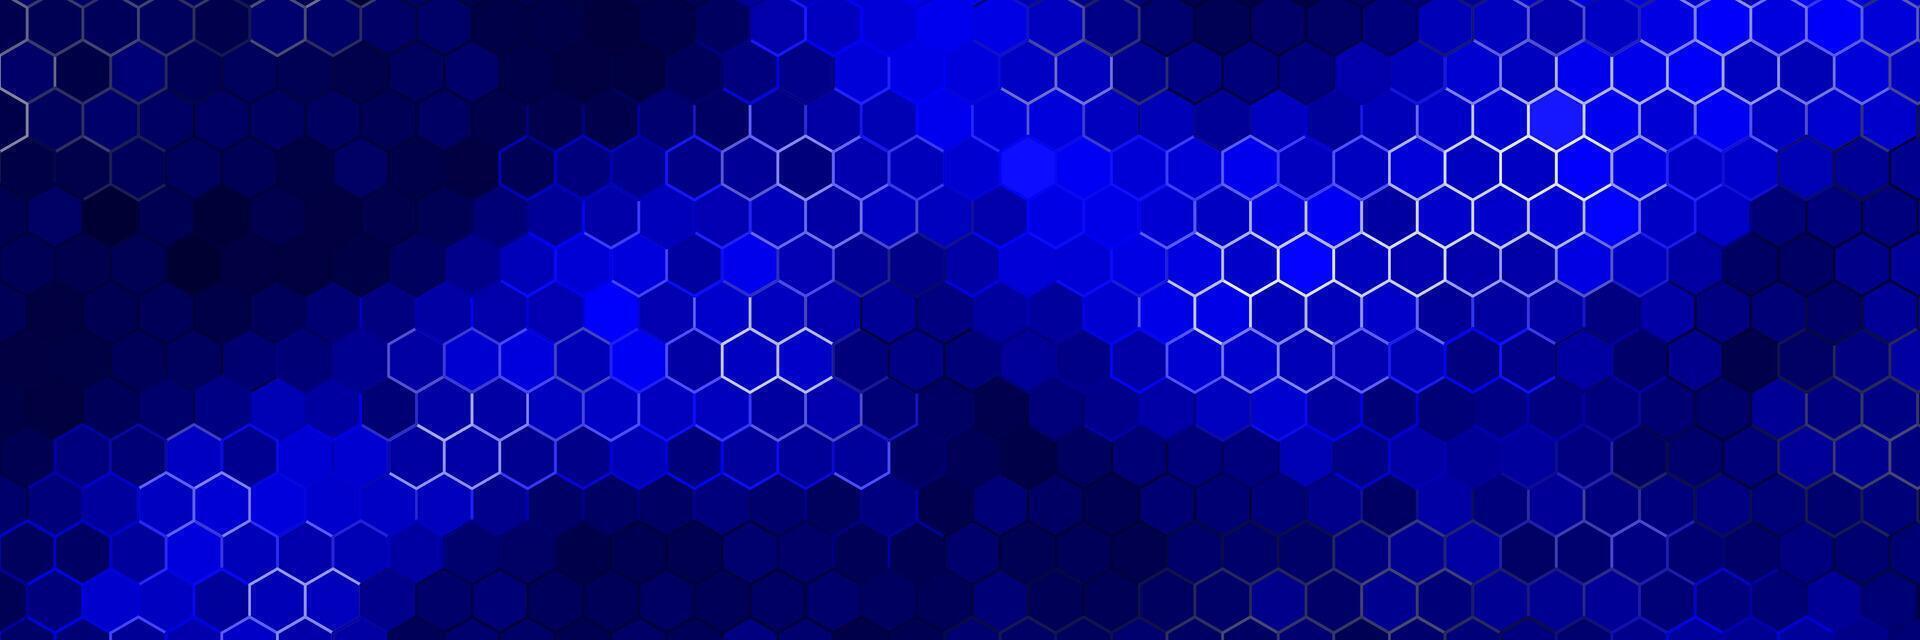 mörk blå trogen teknologi bakgrund med färgrik hex mönster vektor